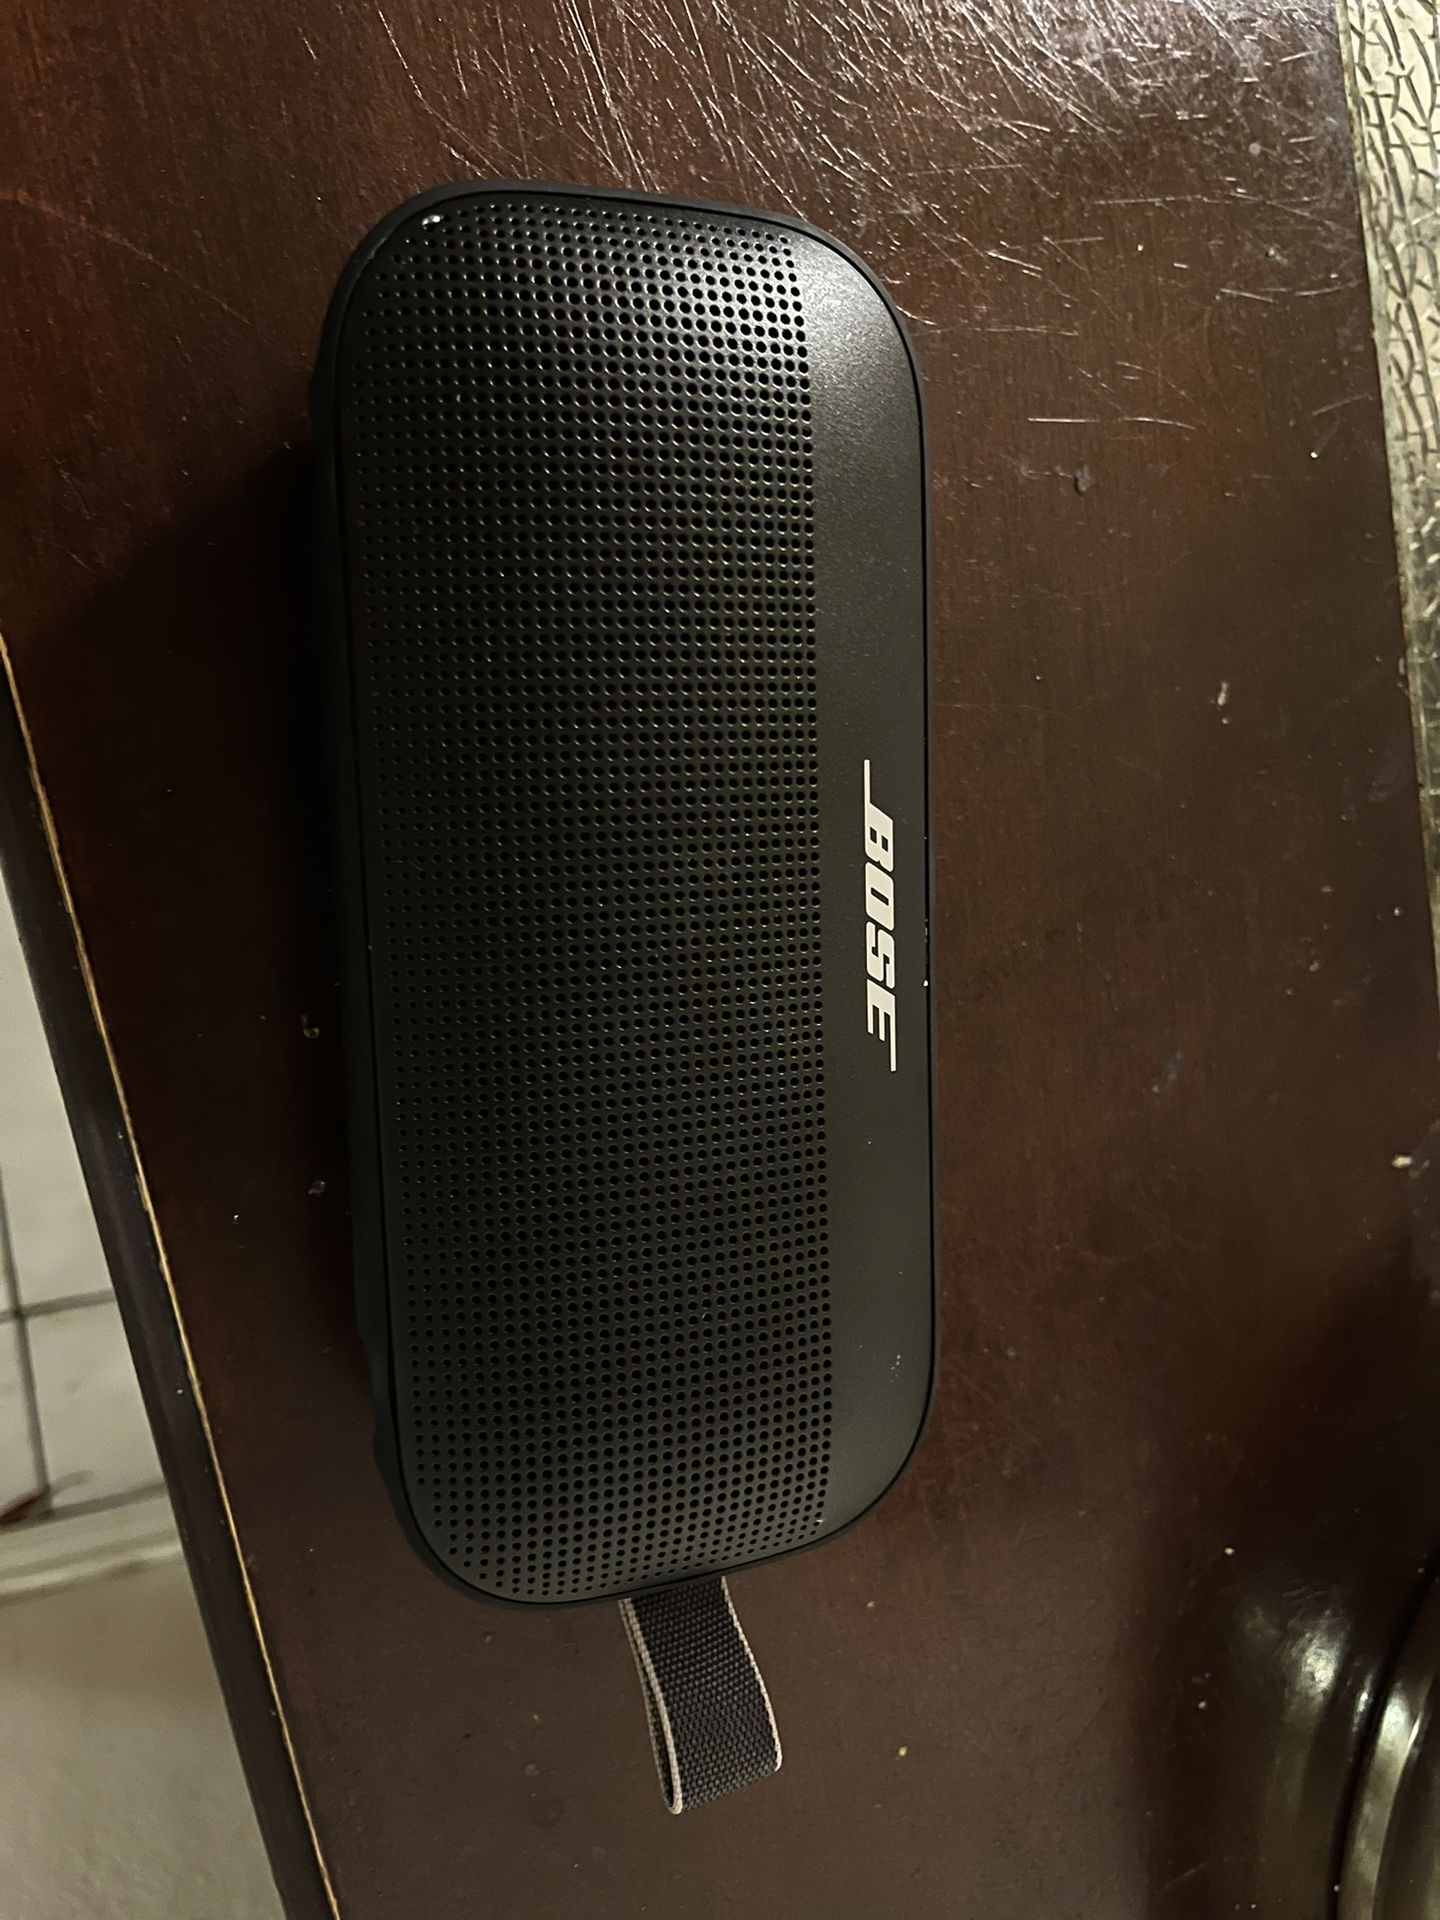 Bose SoundLink Flex Portable Bluetooth Speaker - Black